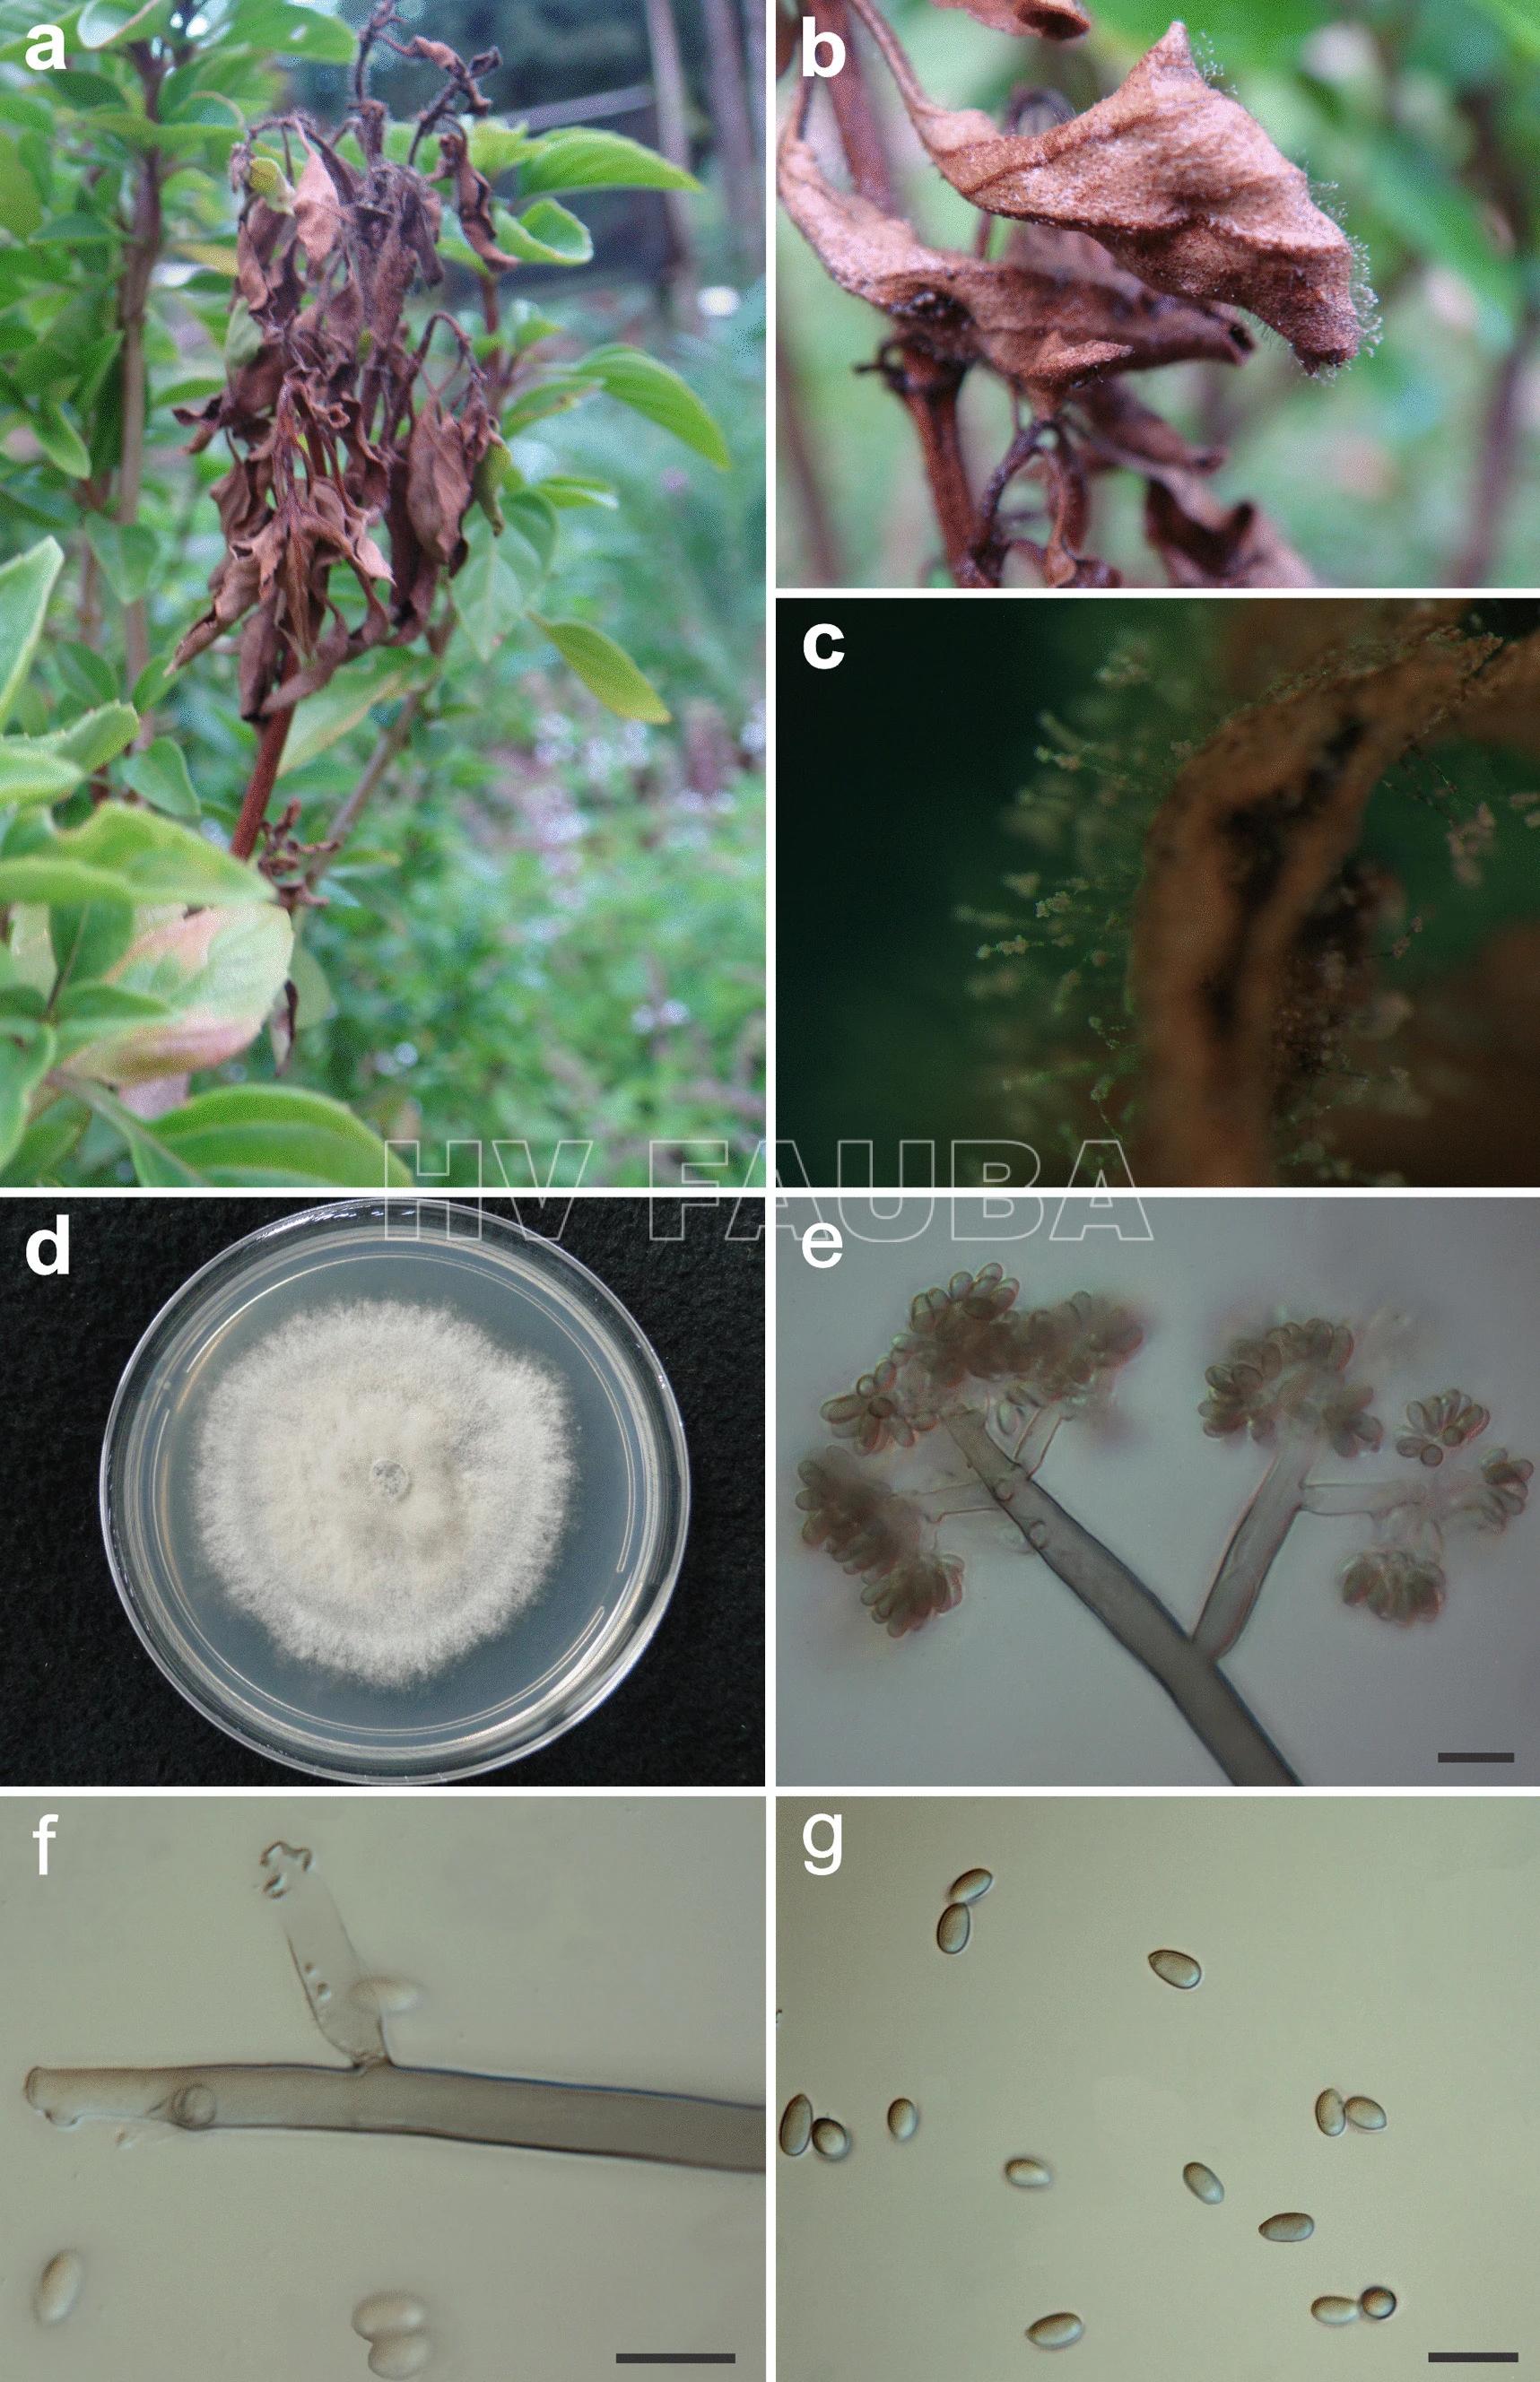 Botrytis cinerea causa el moho gris en Ocimum basilicum. (A) Síntomas de tizón y muerte regresiva de las ramas de la planta en el campo. (B) Esporulación de B. cinerea en hoja necrótica. (C) Primer plano de la esporulación en hojas de albahaca muerta. (D) Cultivo puro de B. cinerea aislado de albahaca. (E) Ápice del conidióforo. (F) Células conidiógenas. (G) Conidios. Barras = 50 µm (e), 20 µm (f, g). Autor: de Oliveira Lopes et al., 2021.